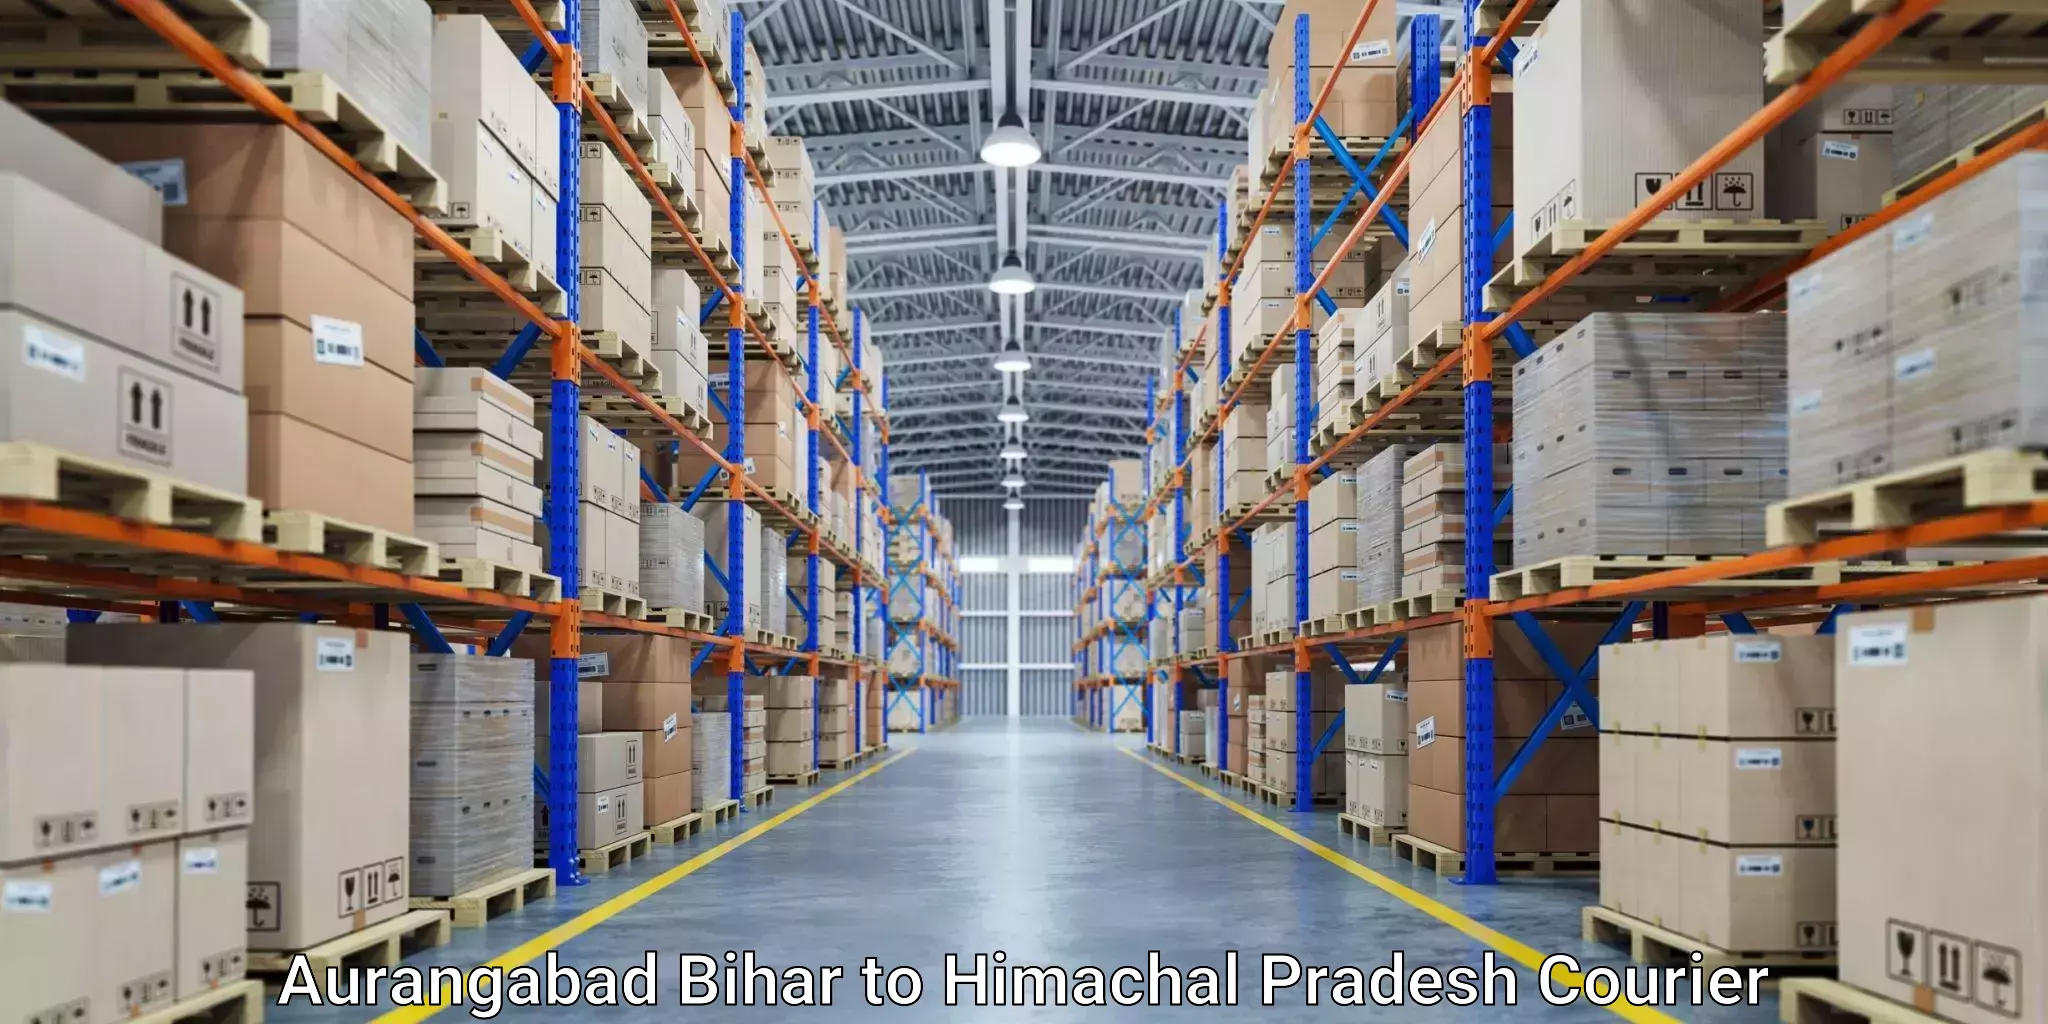 Premium courier services Aurangabad Bihar to Rampur Bushahr